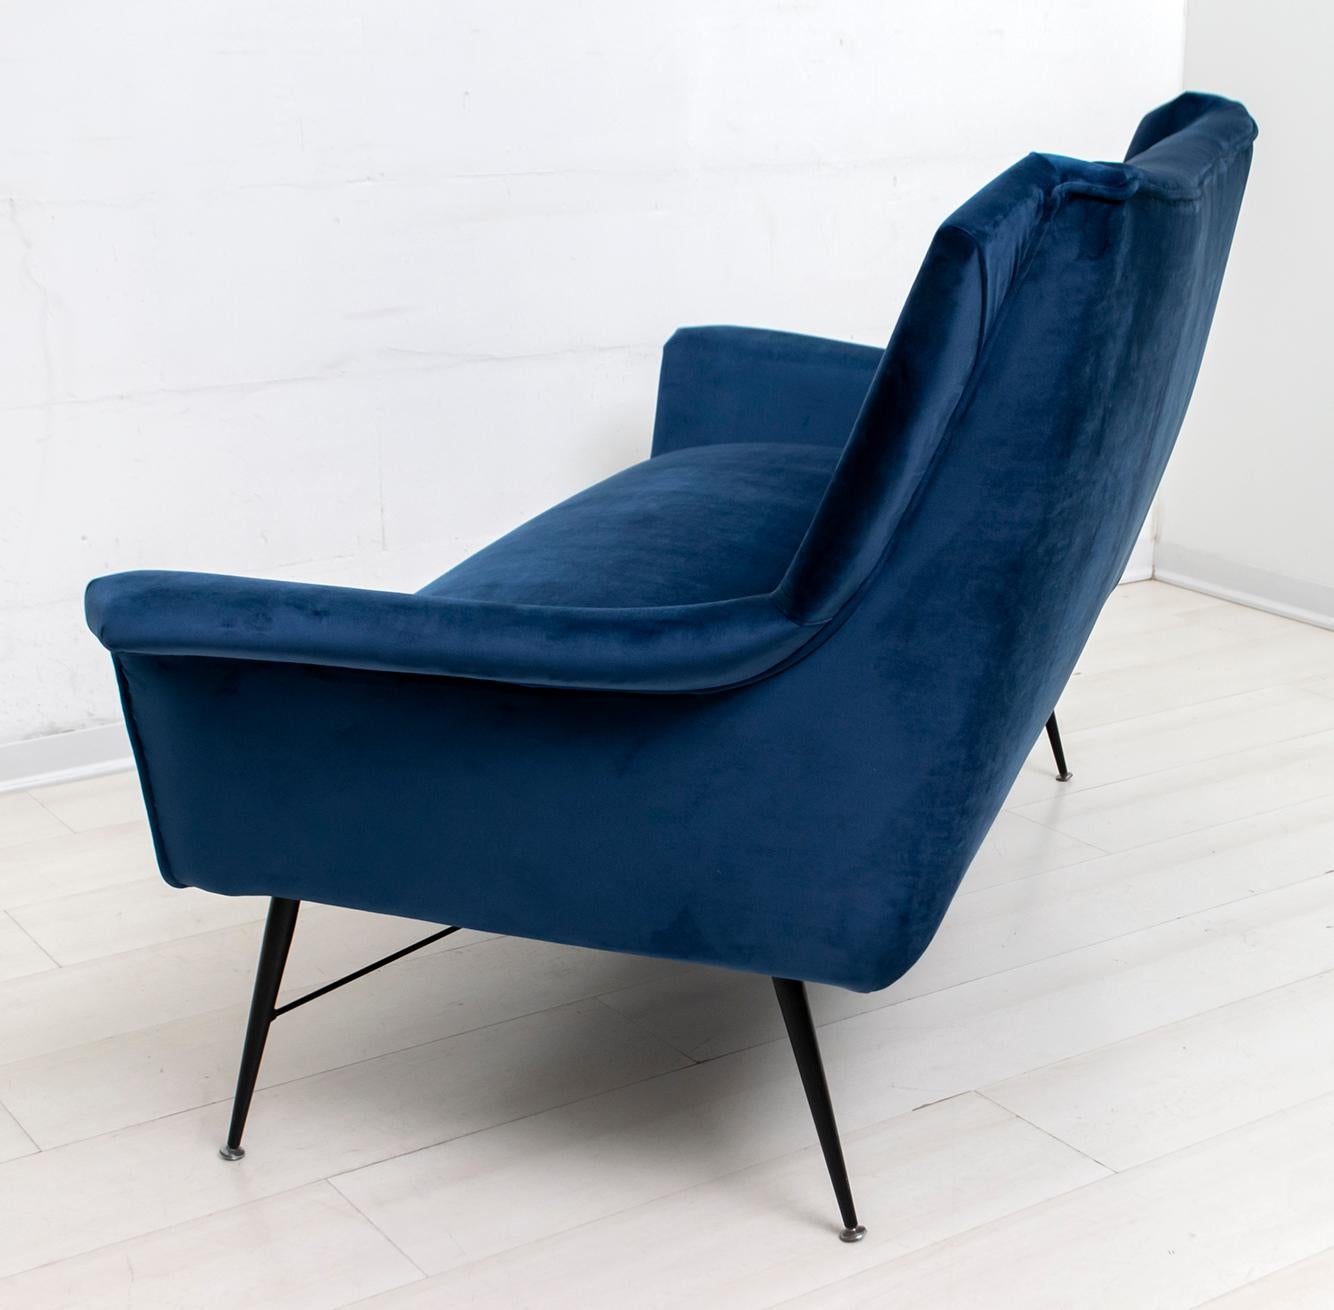 Velvet Gigi Radice Mid-Century Modern Italian Sofa for Minotti, 1950s For Sale